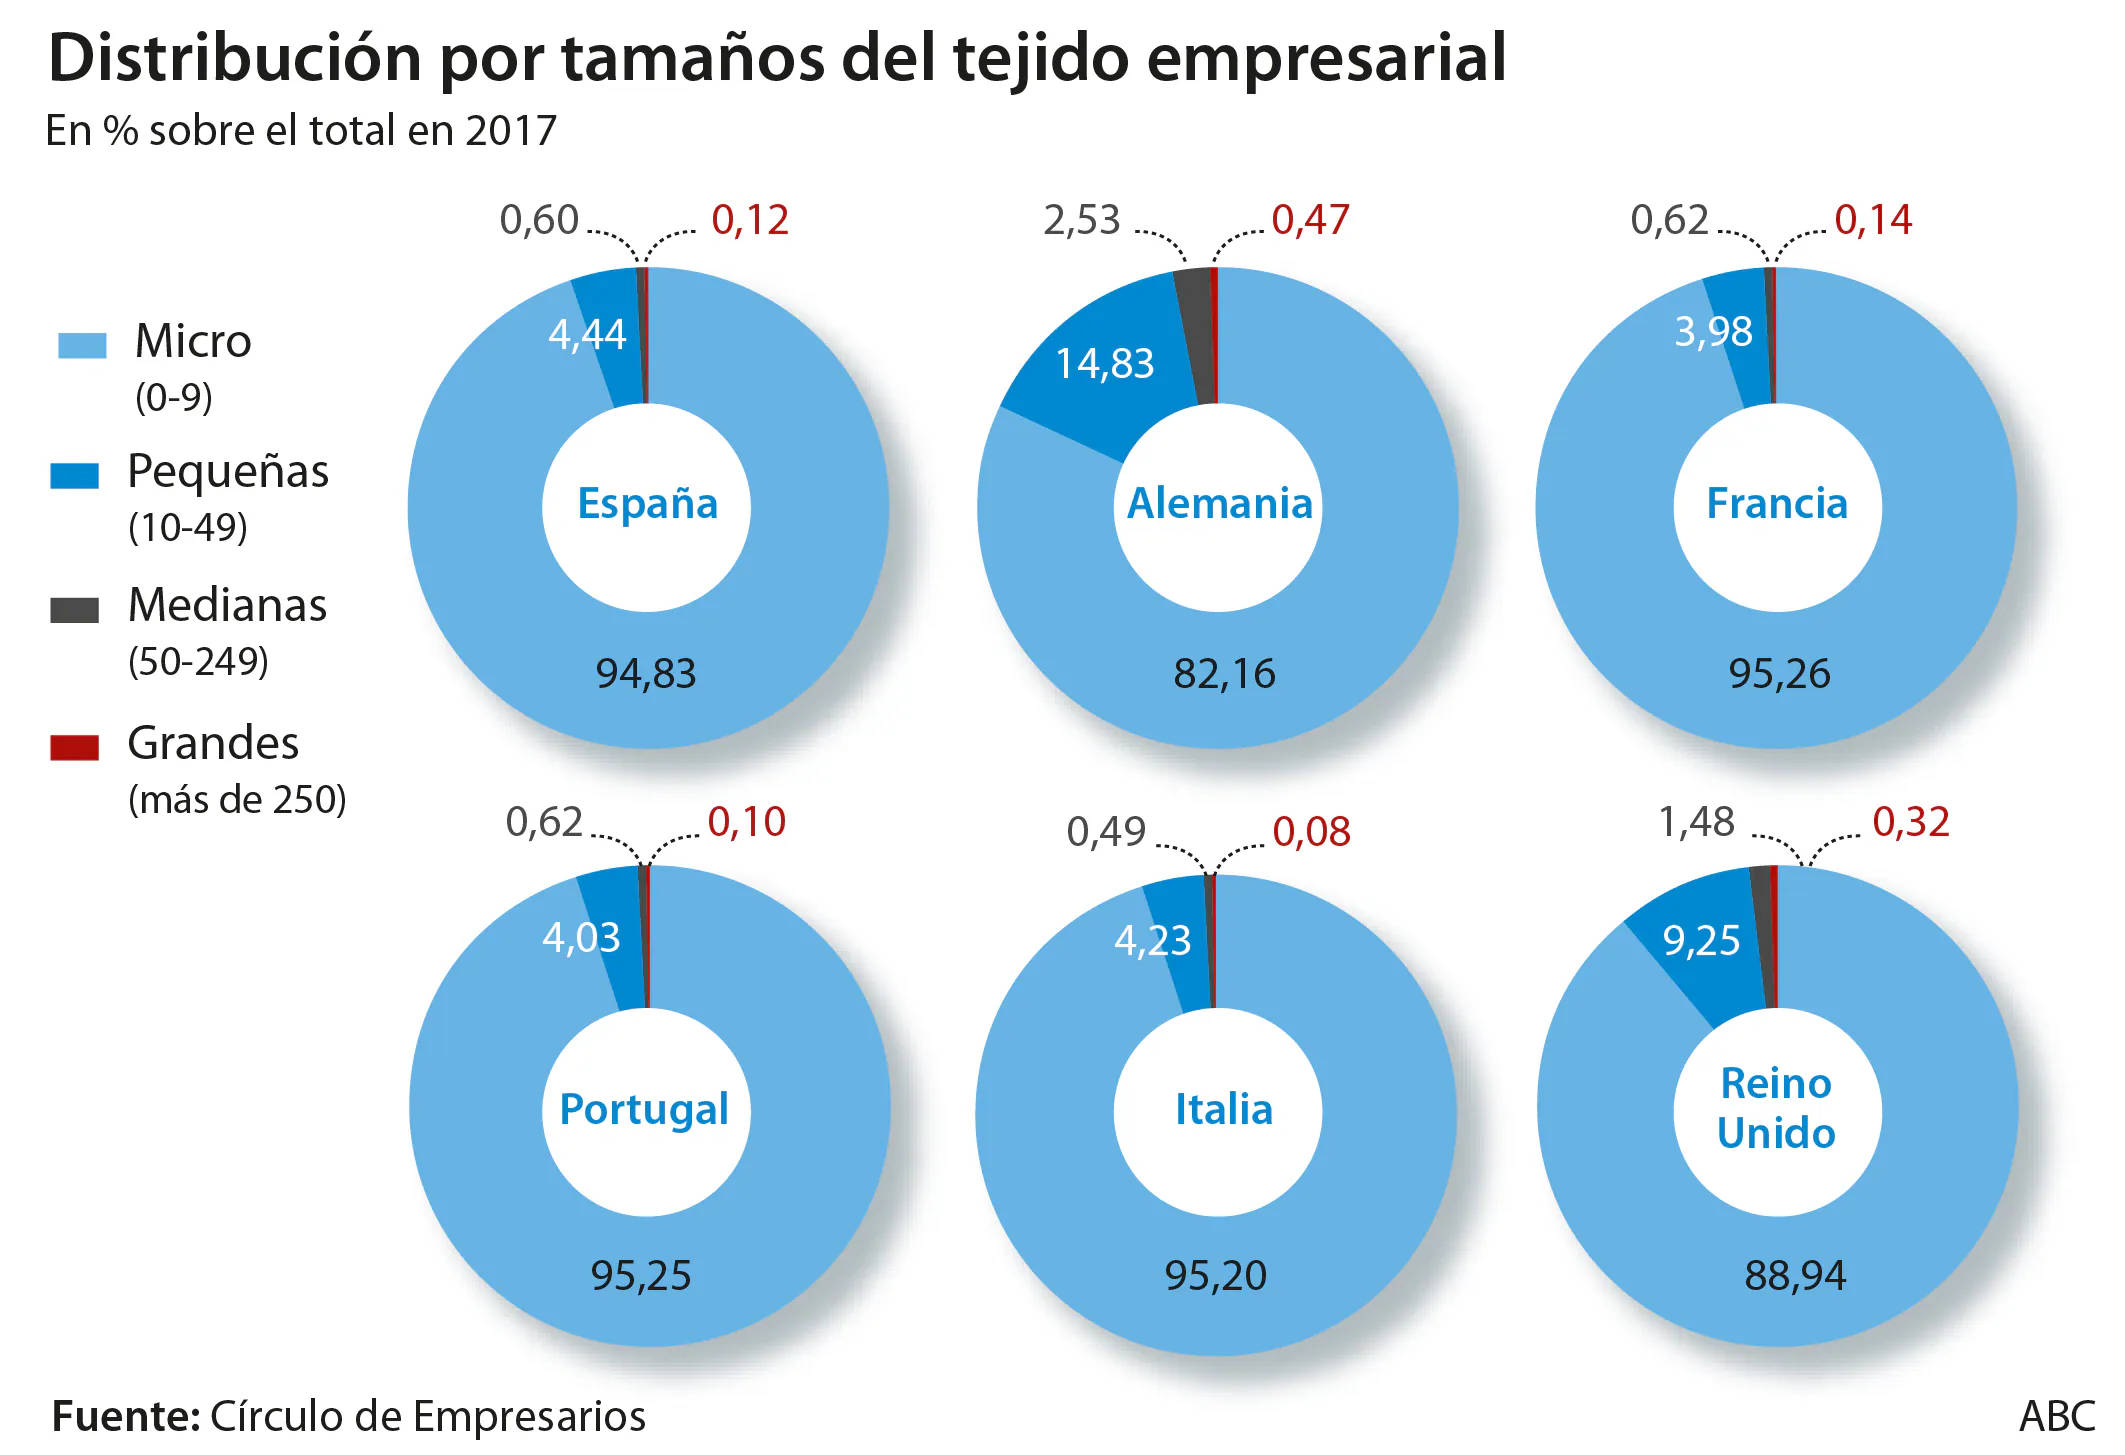 El muro normativo que sepulta el crecimiento de las empresas españolas